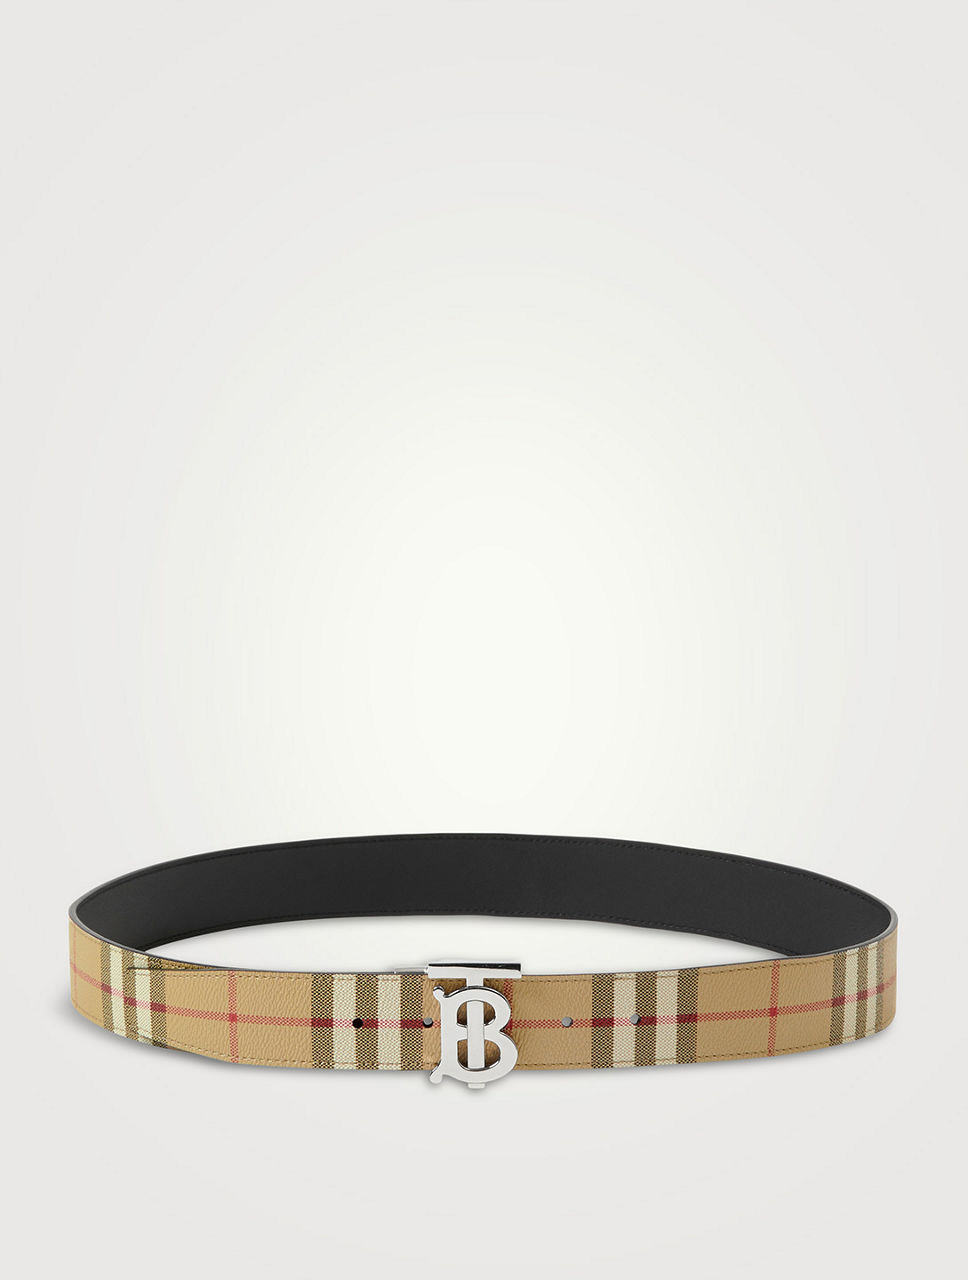 3.5cm b buckle leather belt - Balmain - Men